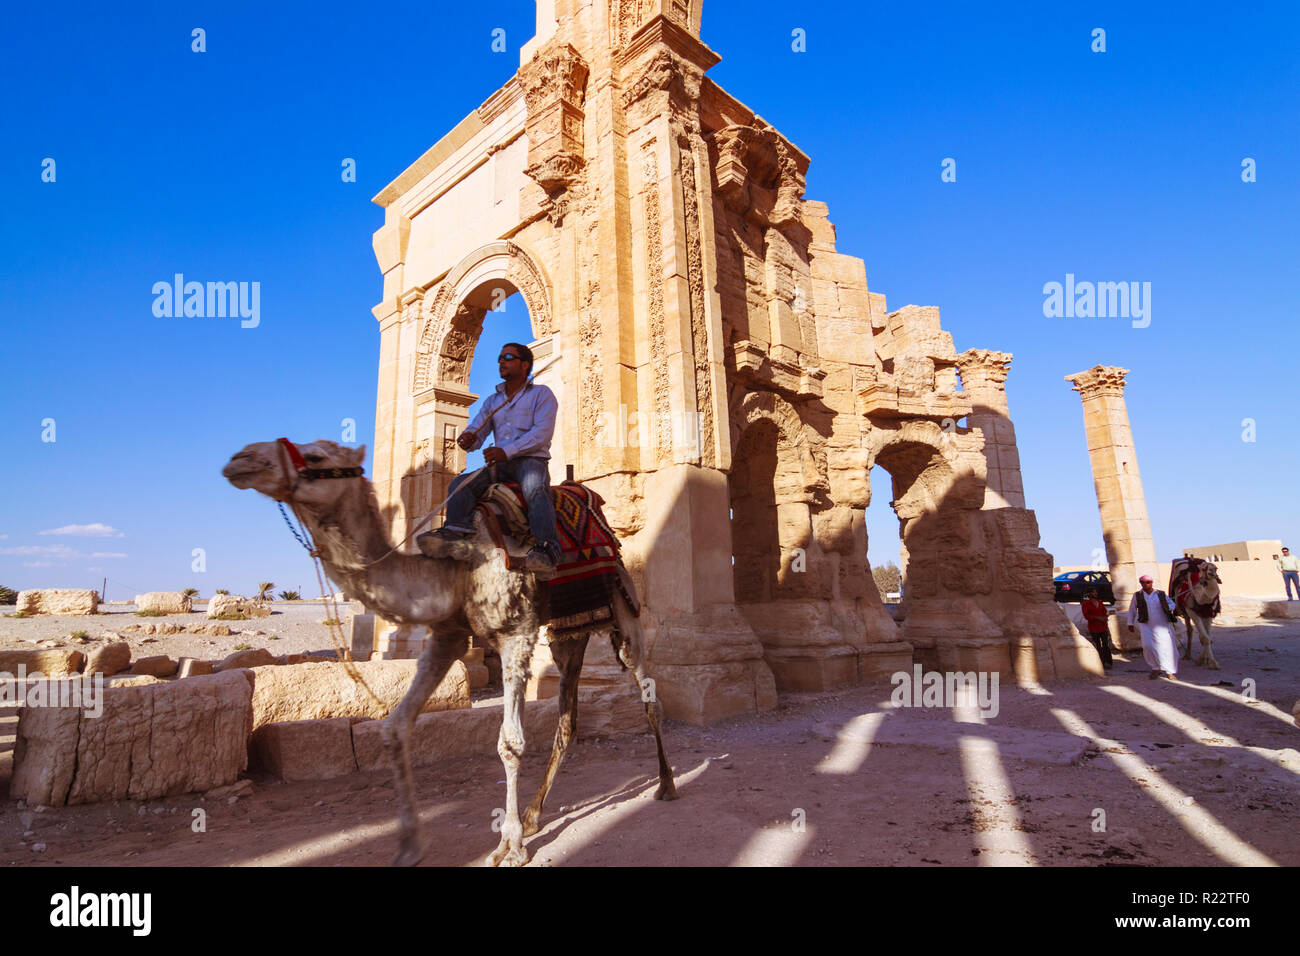 Palmyra, Homs Governatorato, Siria - Maggio 27th, 2009 : un uomo che cavalca un cammello al di sotto del terzo secolo monumentale arco di trionfo di Palmyra, Romano ornamenta Foto Stock